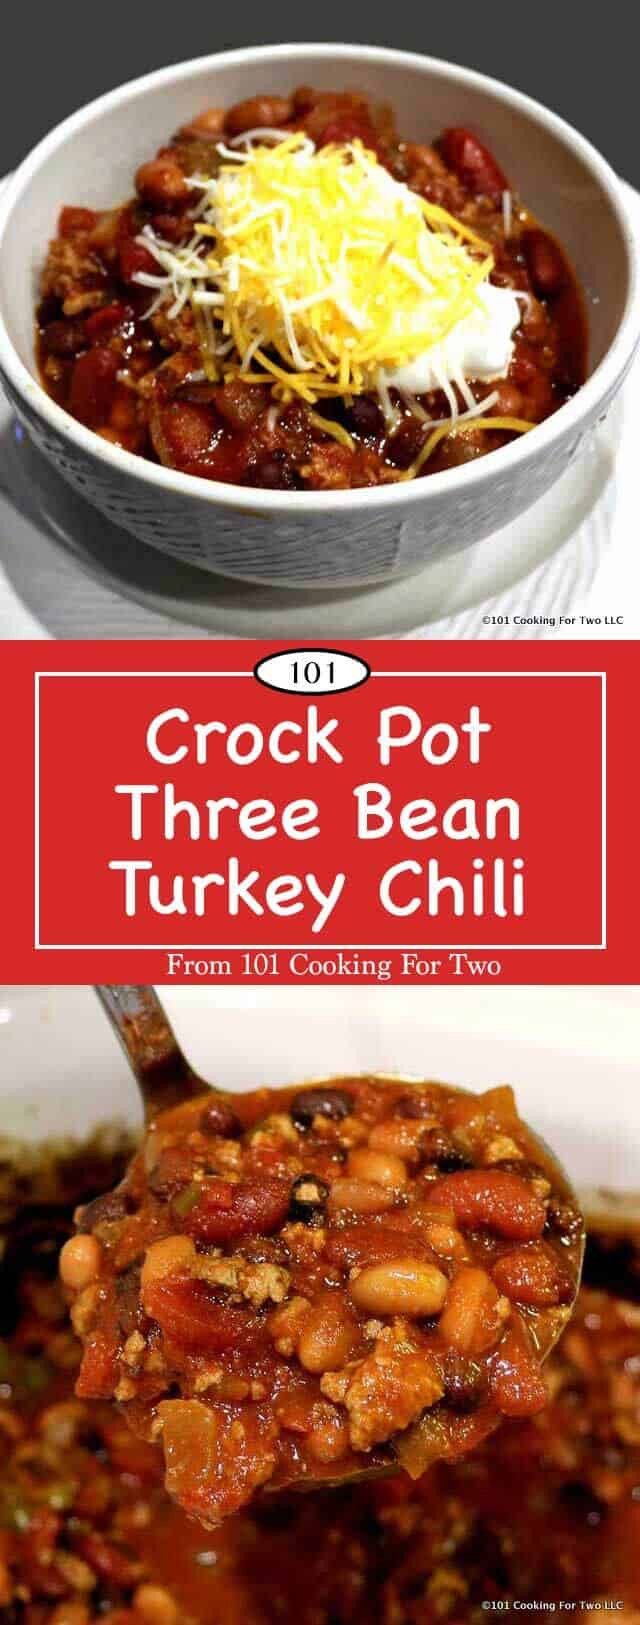 Healthy Turkey Chili Recipe Crock Pot
 Crock Pot Three Bean Turkey Chili